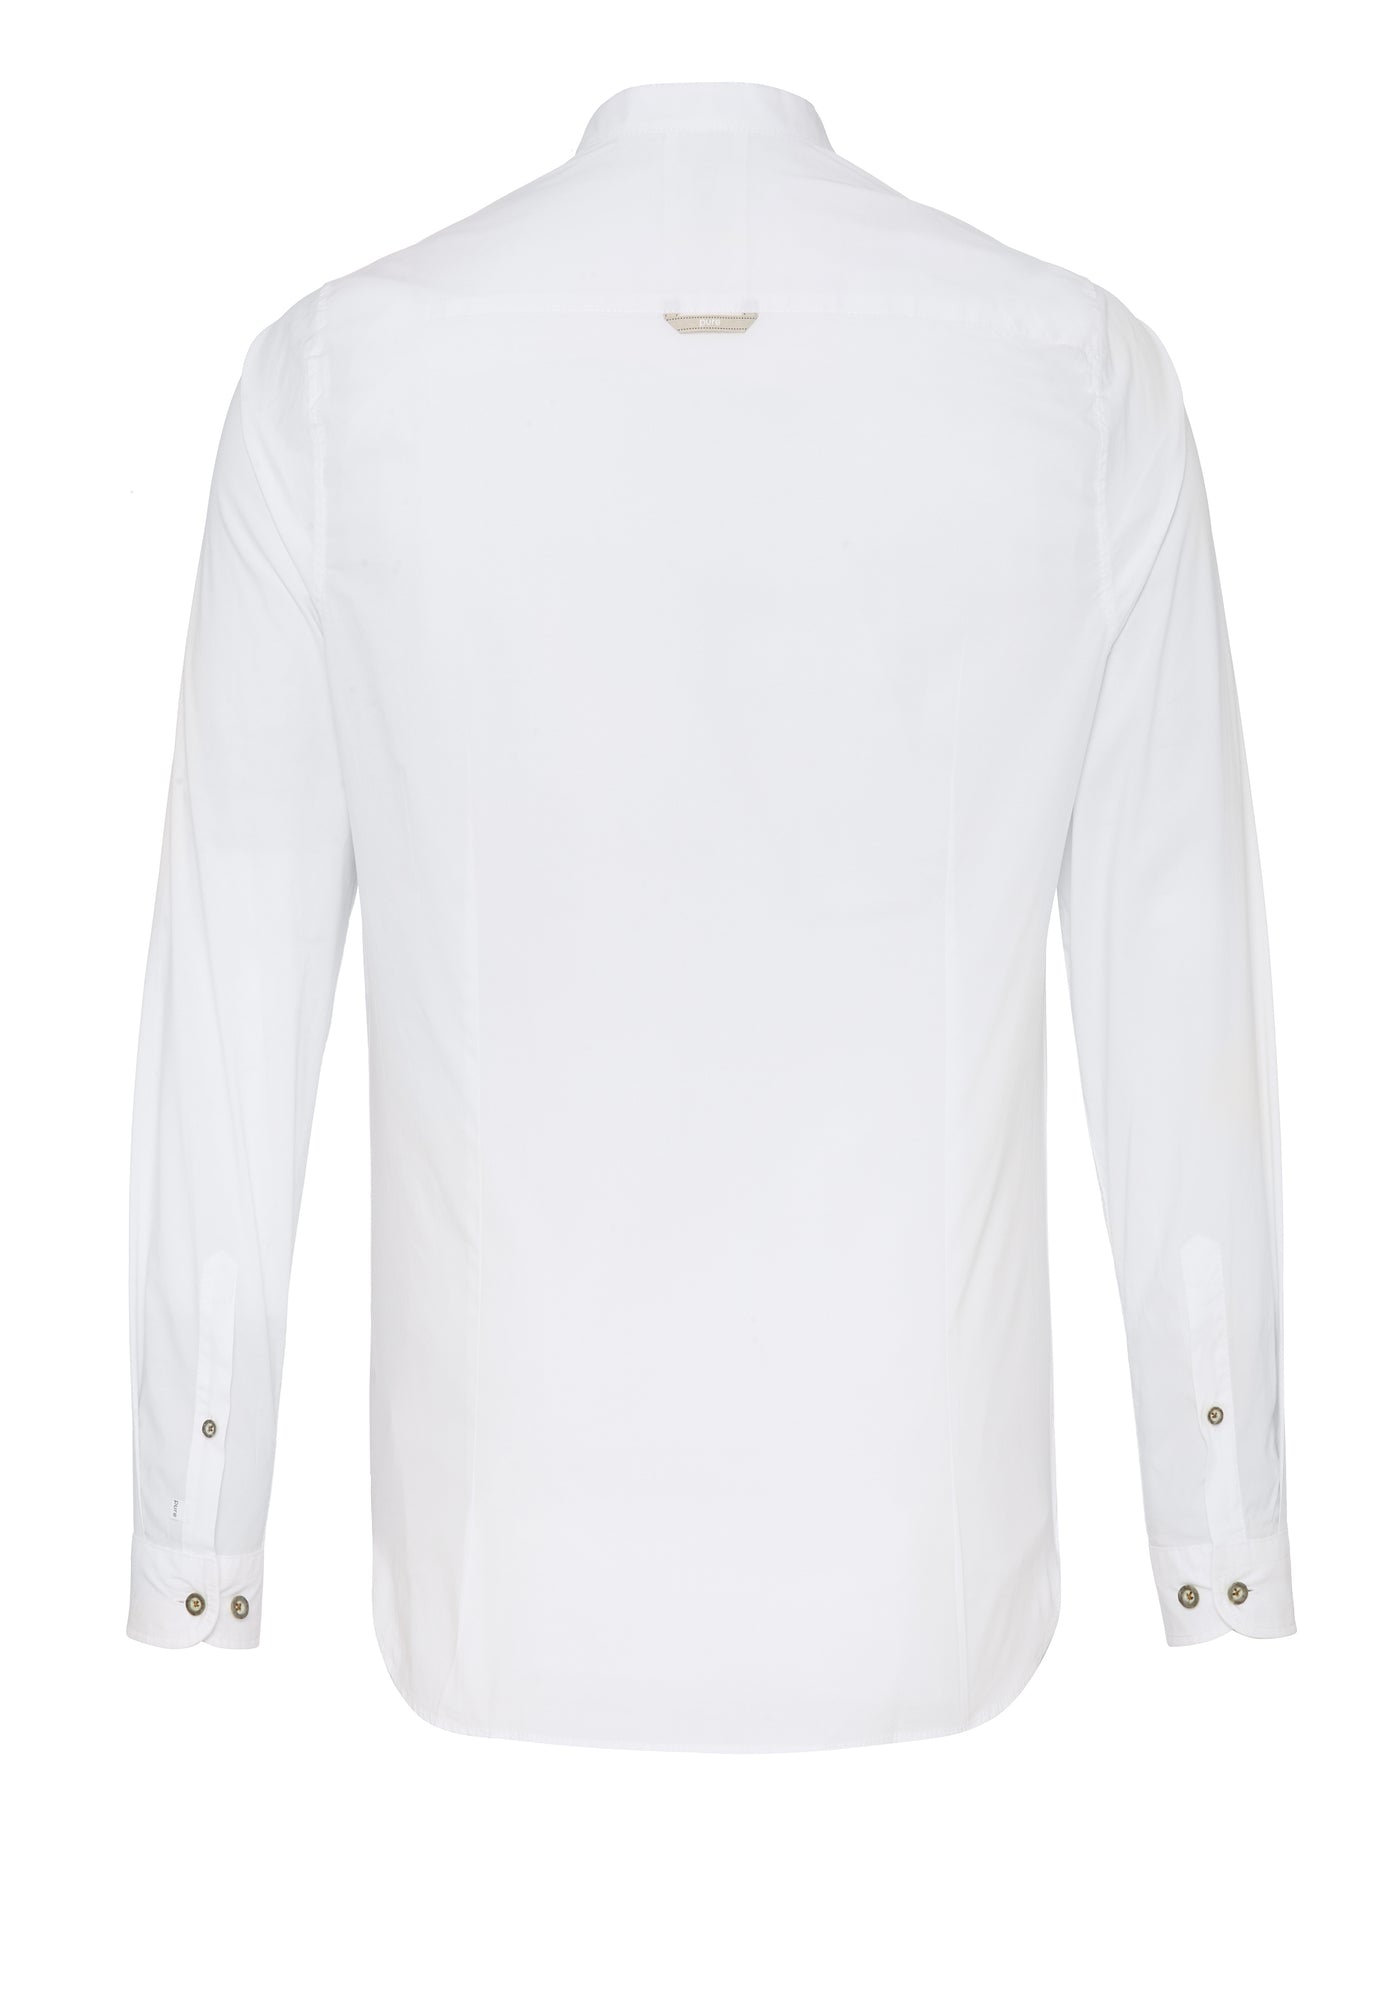 5011-21690 - Tracht Hemd slim fit - weiß